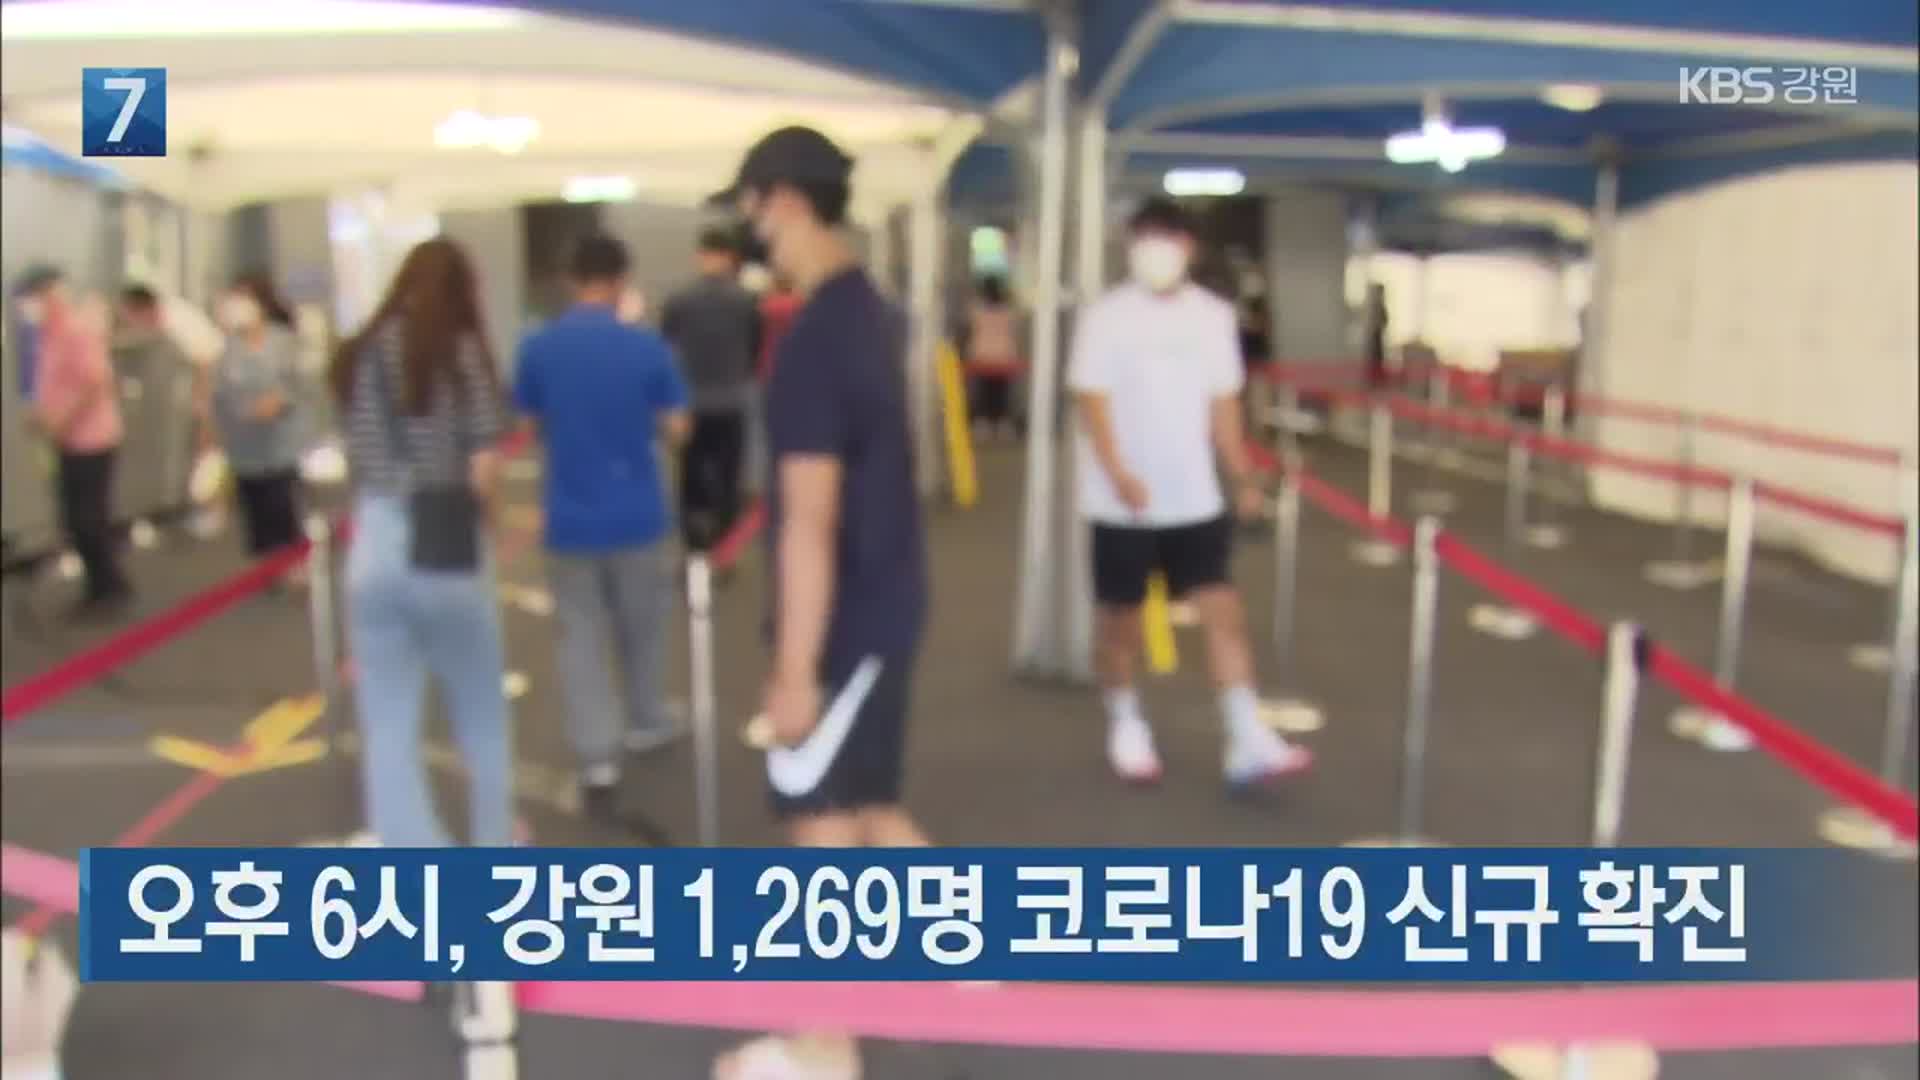 오후 6시, 강원 1,269명 코로나19 신규 확진